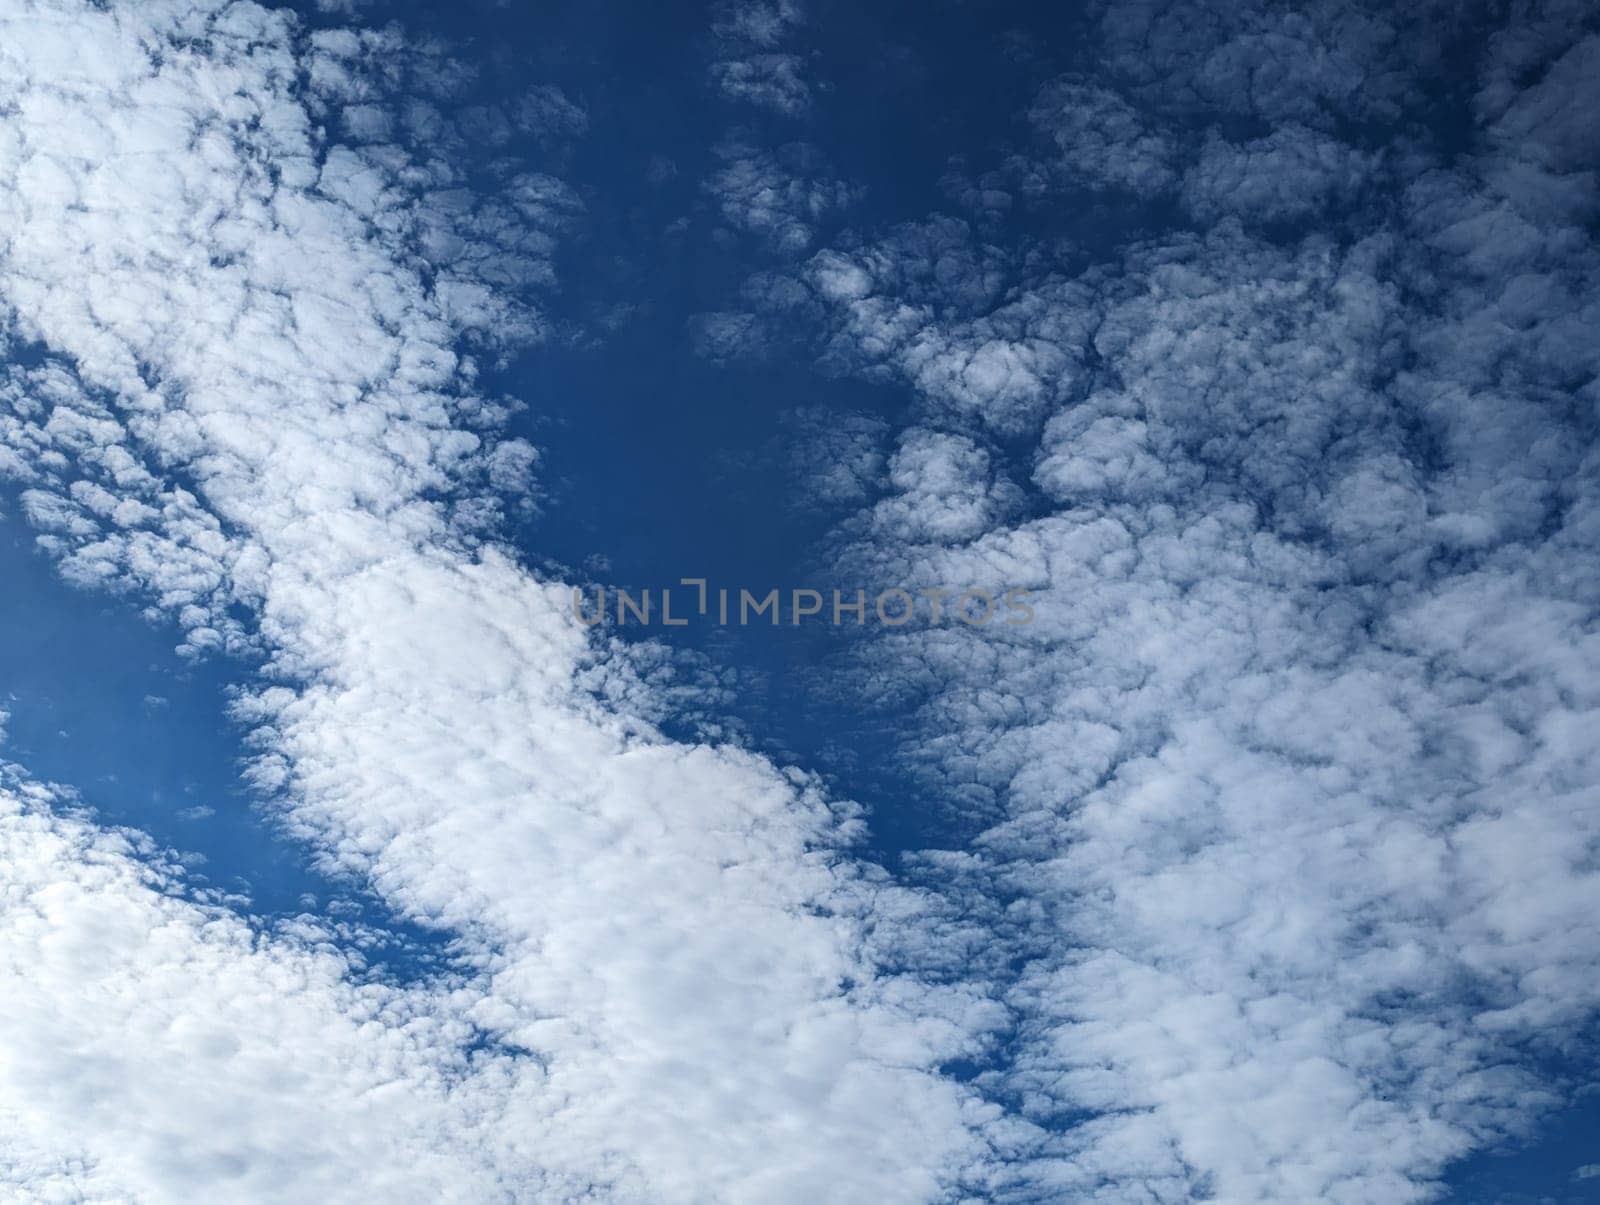 blue sky and clouds background by jackreznor